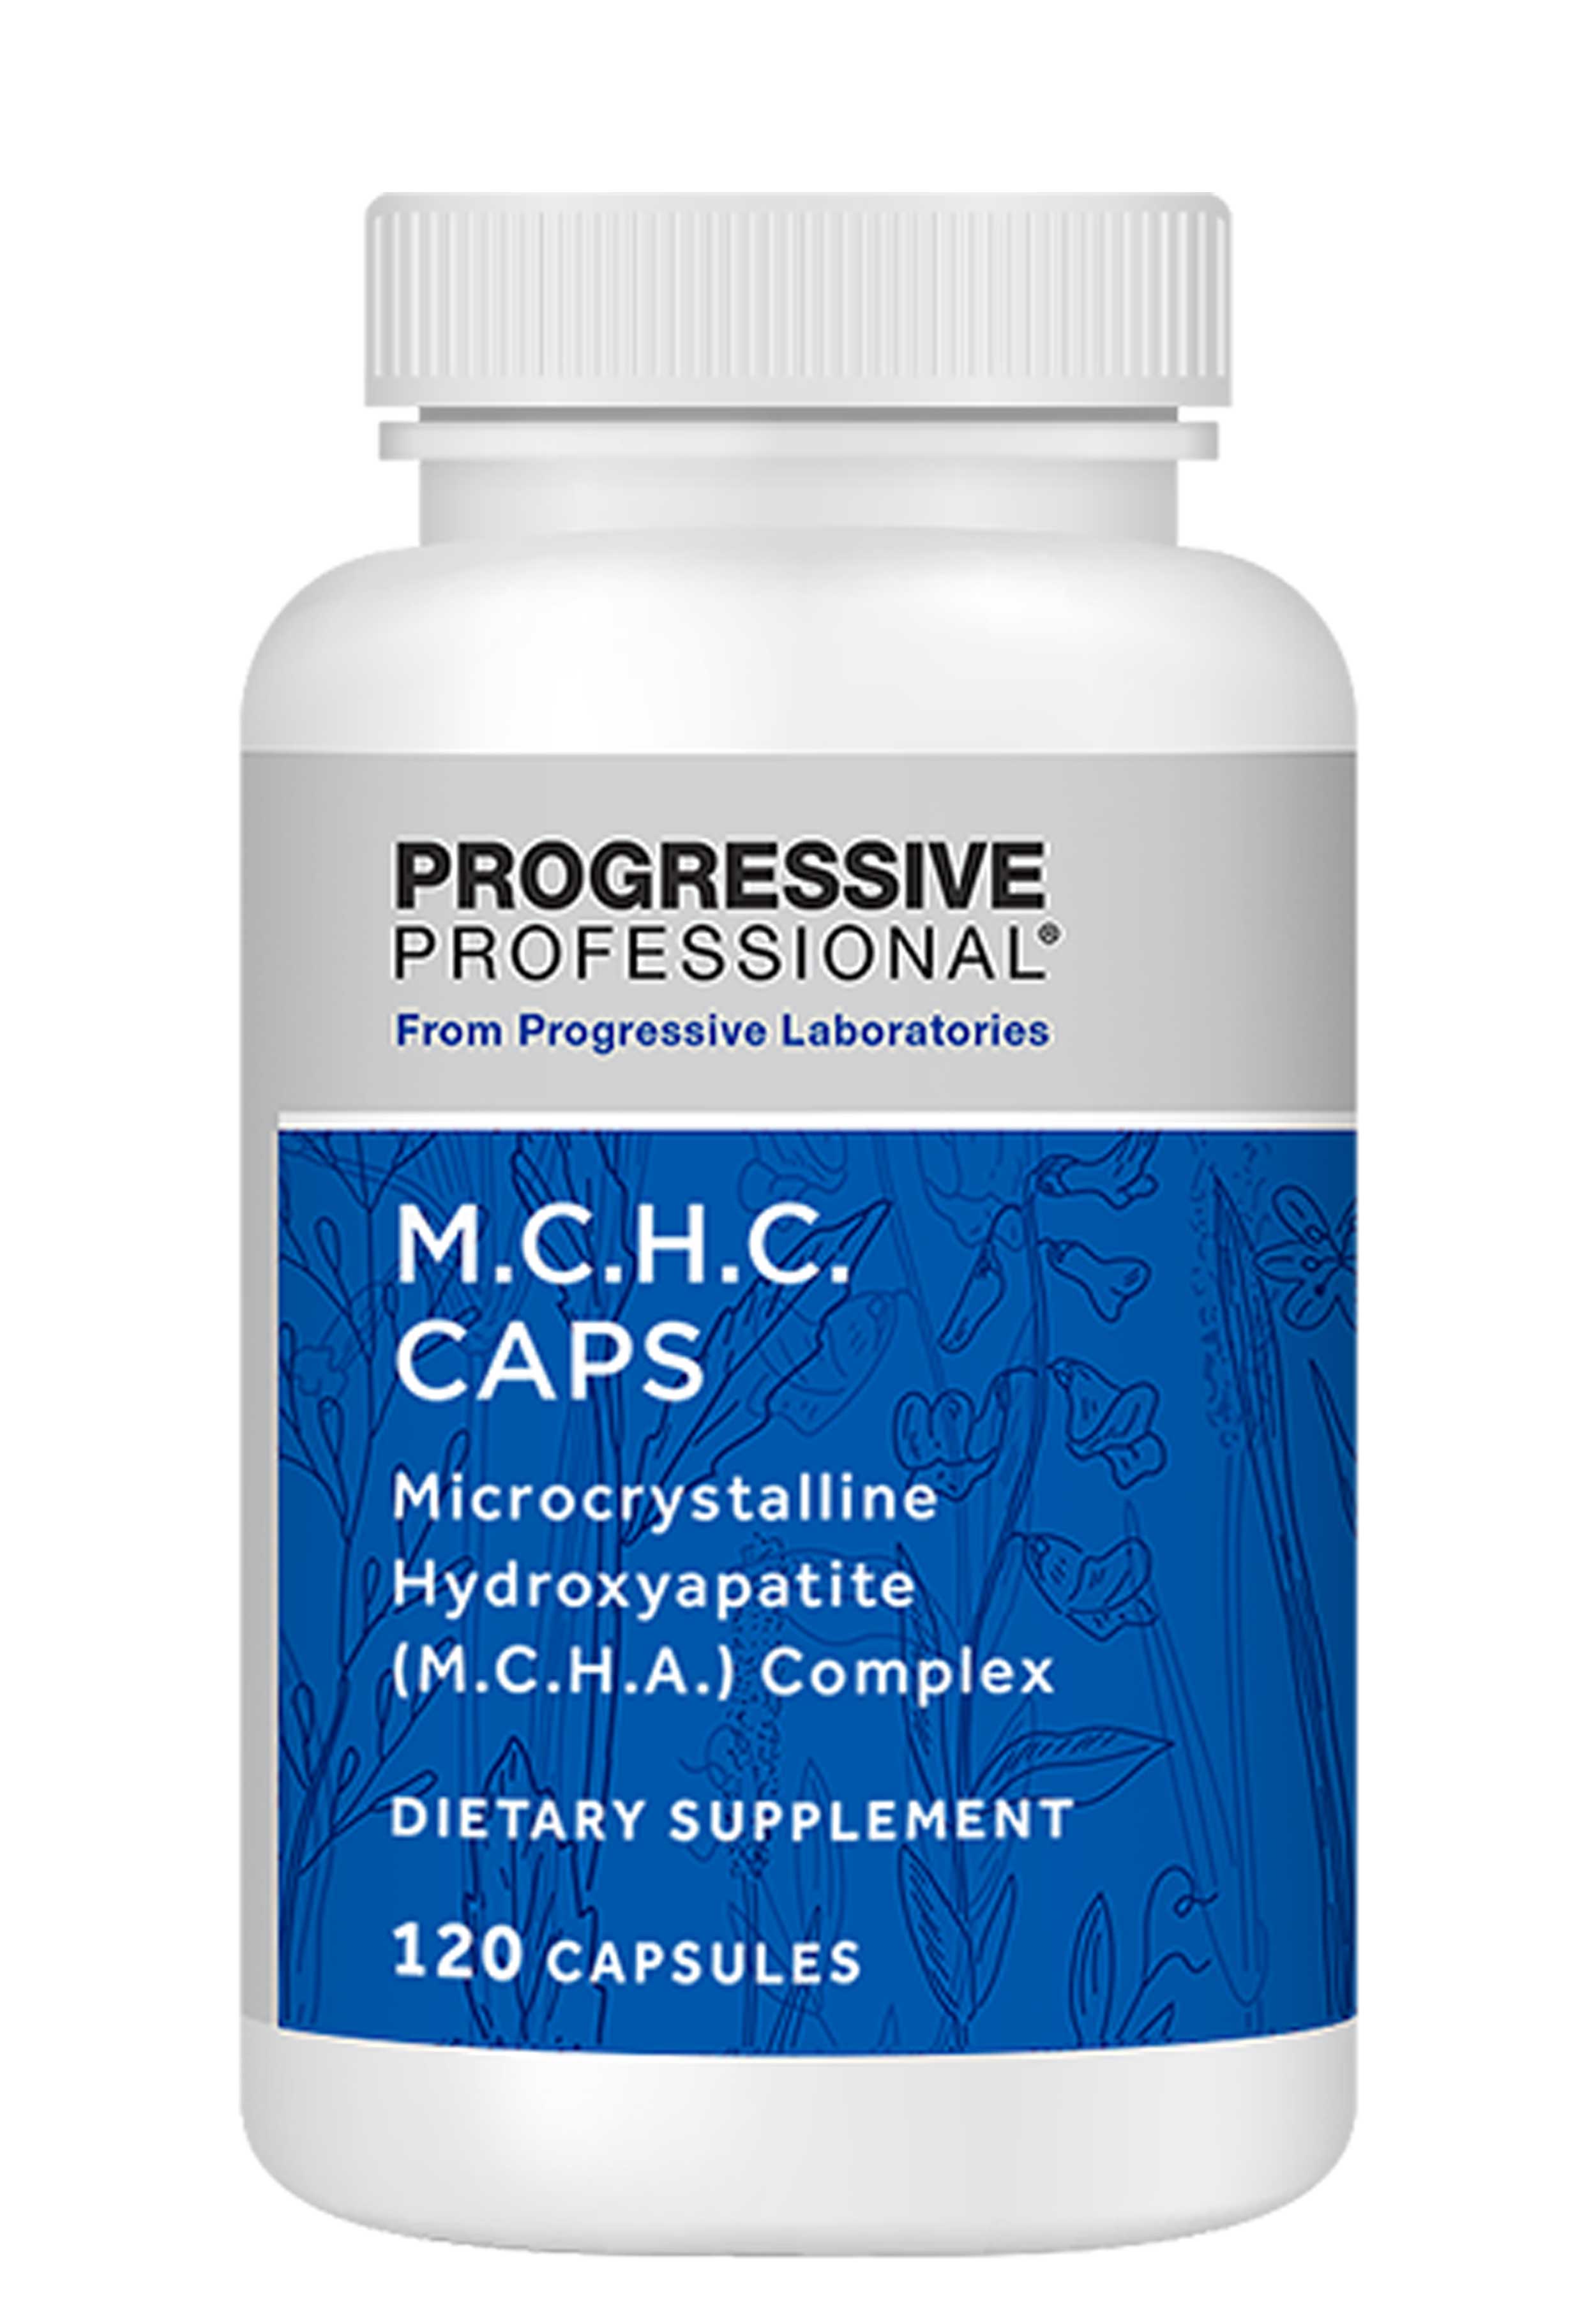 Progressive Laboratories M.C.H.C. Caps